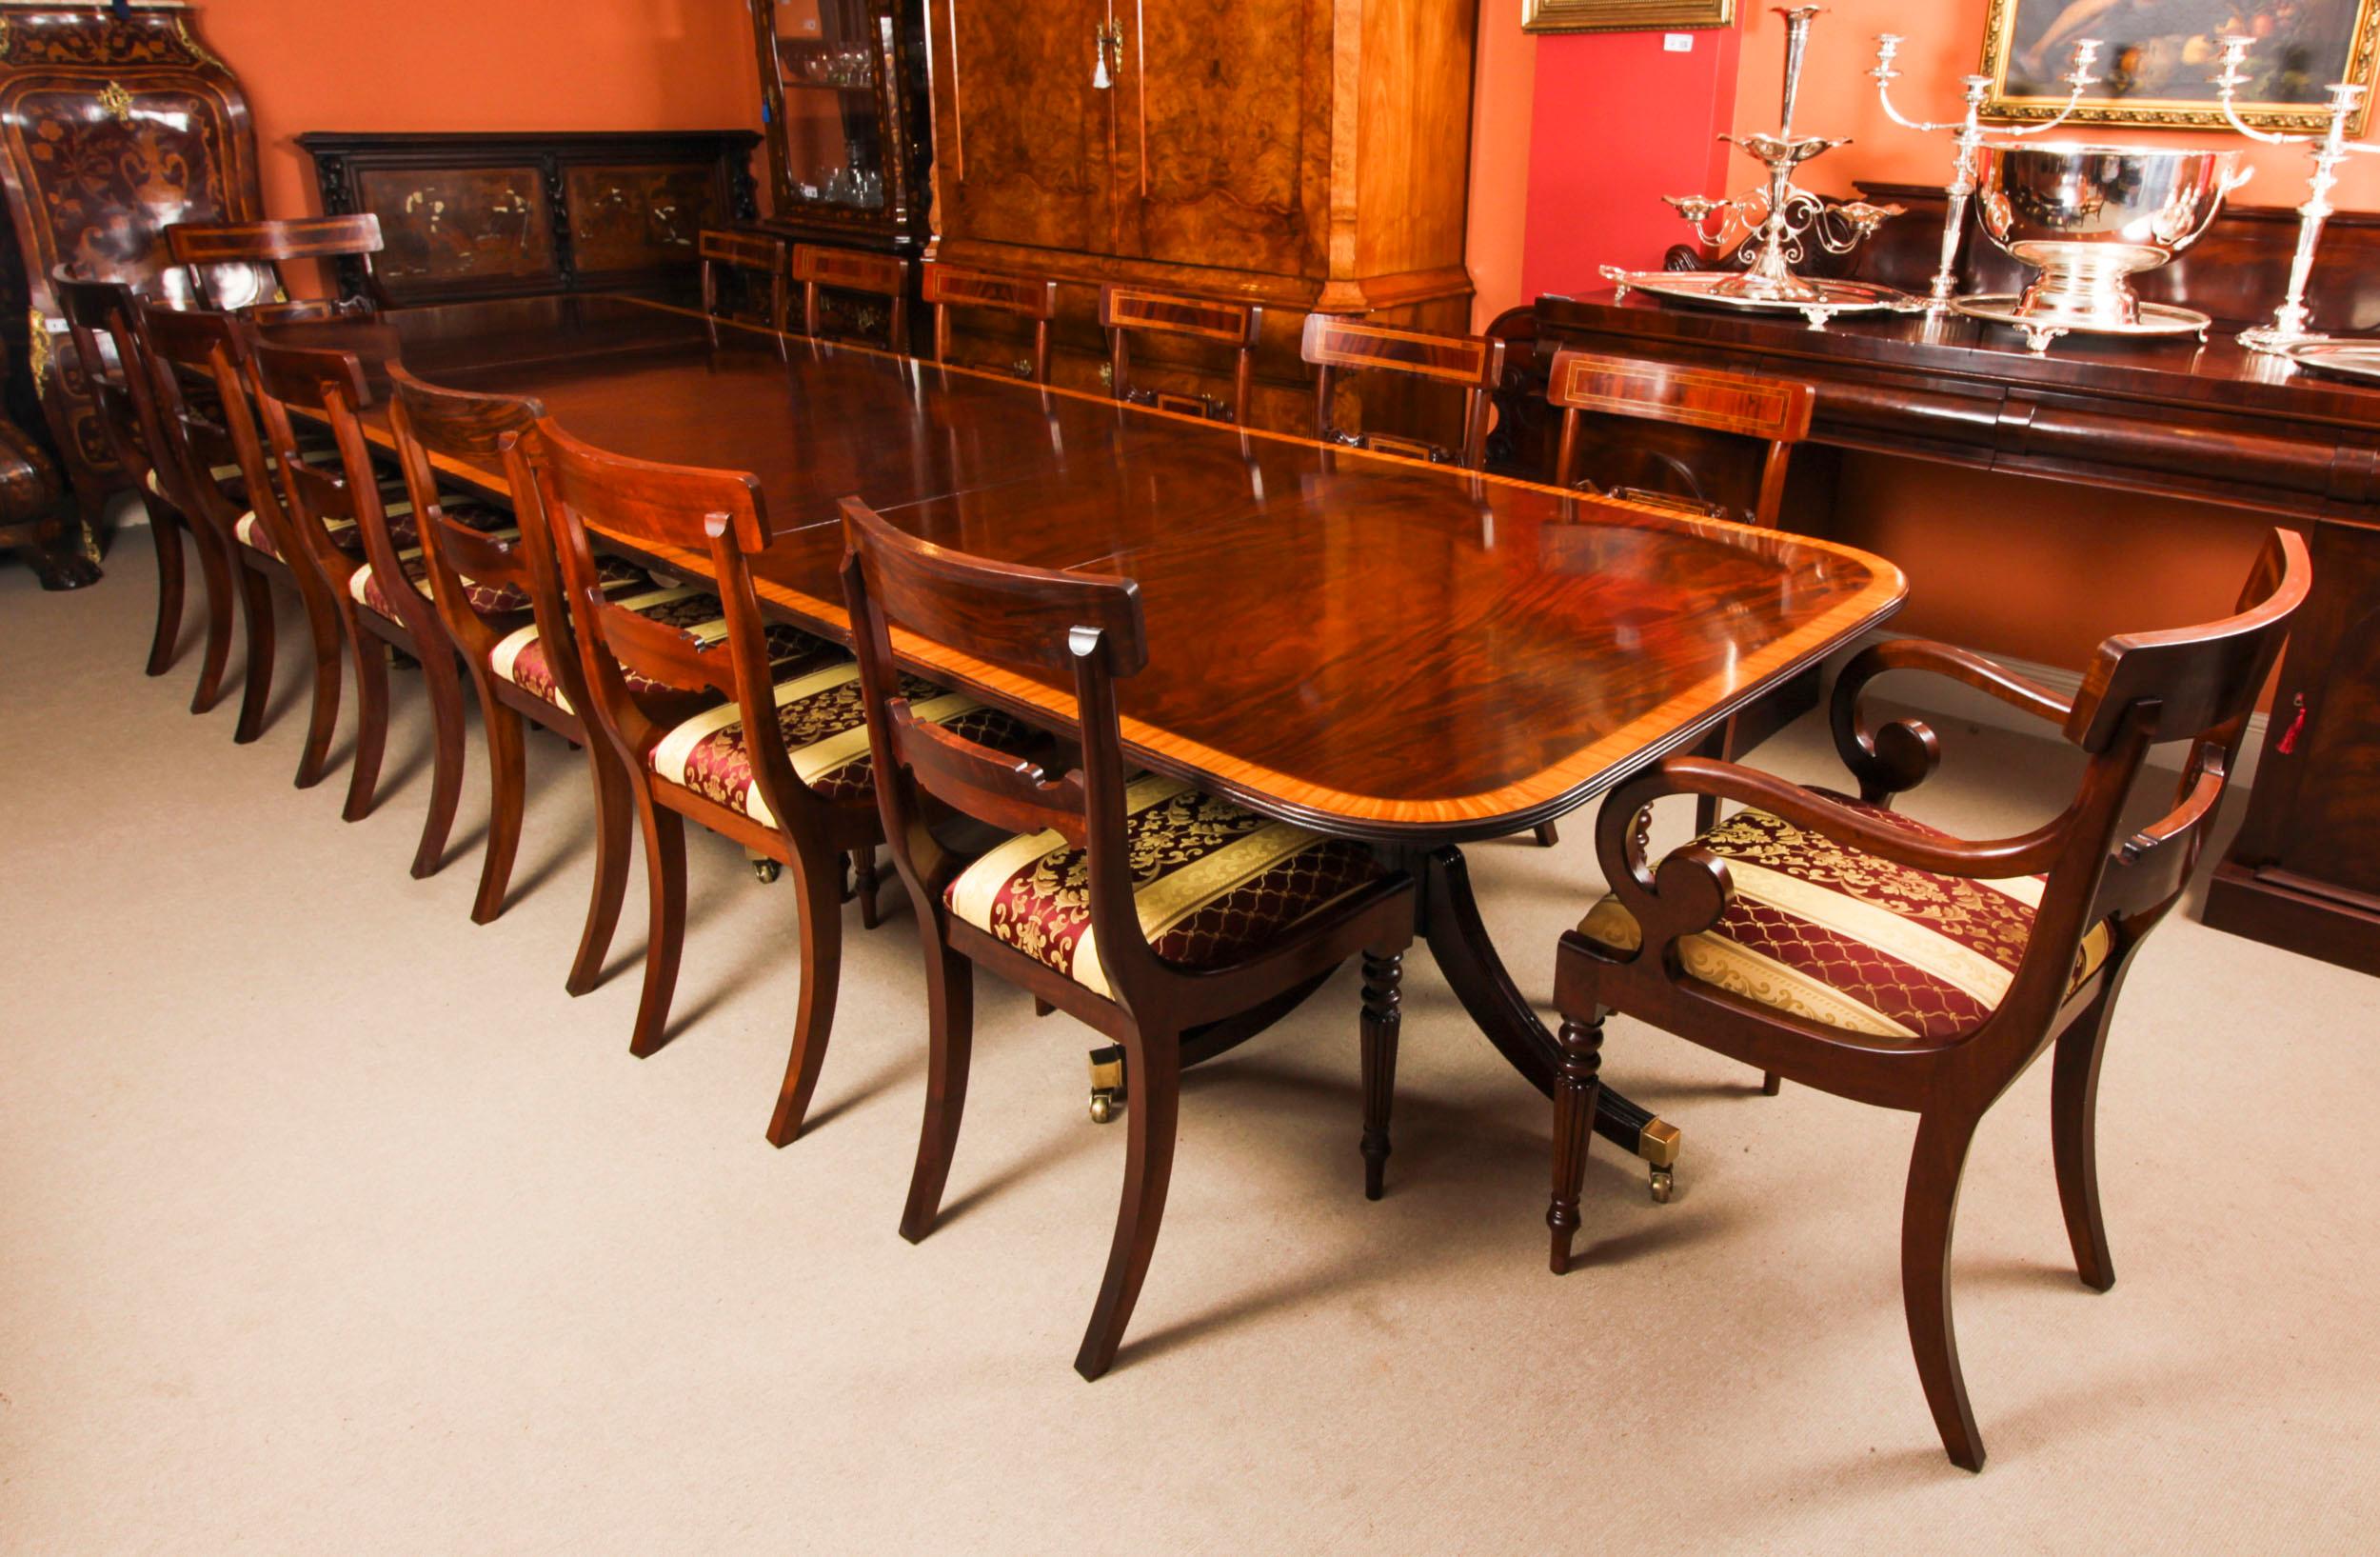 Dies ist ein hervorragender 13ft Vintage Regency Revival Esstisch aus der zweiten Hälfte des 20.

Die Tischplatte wurde aus geflammtem Mahagoniholz gefertigt und weist eine prächtige Verzierung aus satiniertem Holz mit Querstreifen auf. Der Tisch